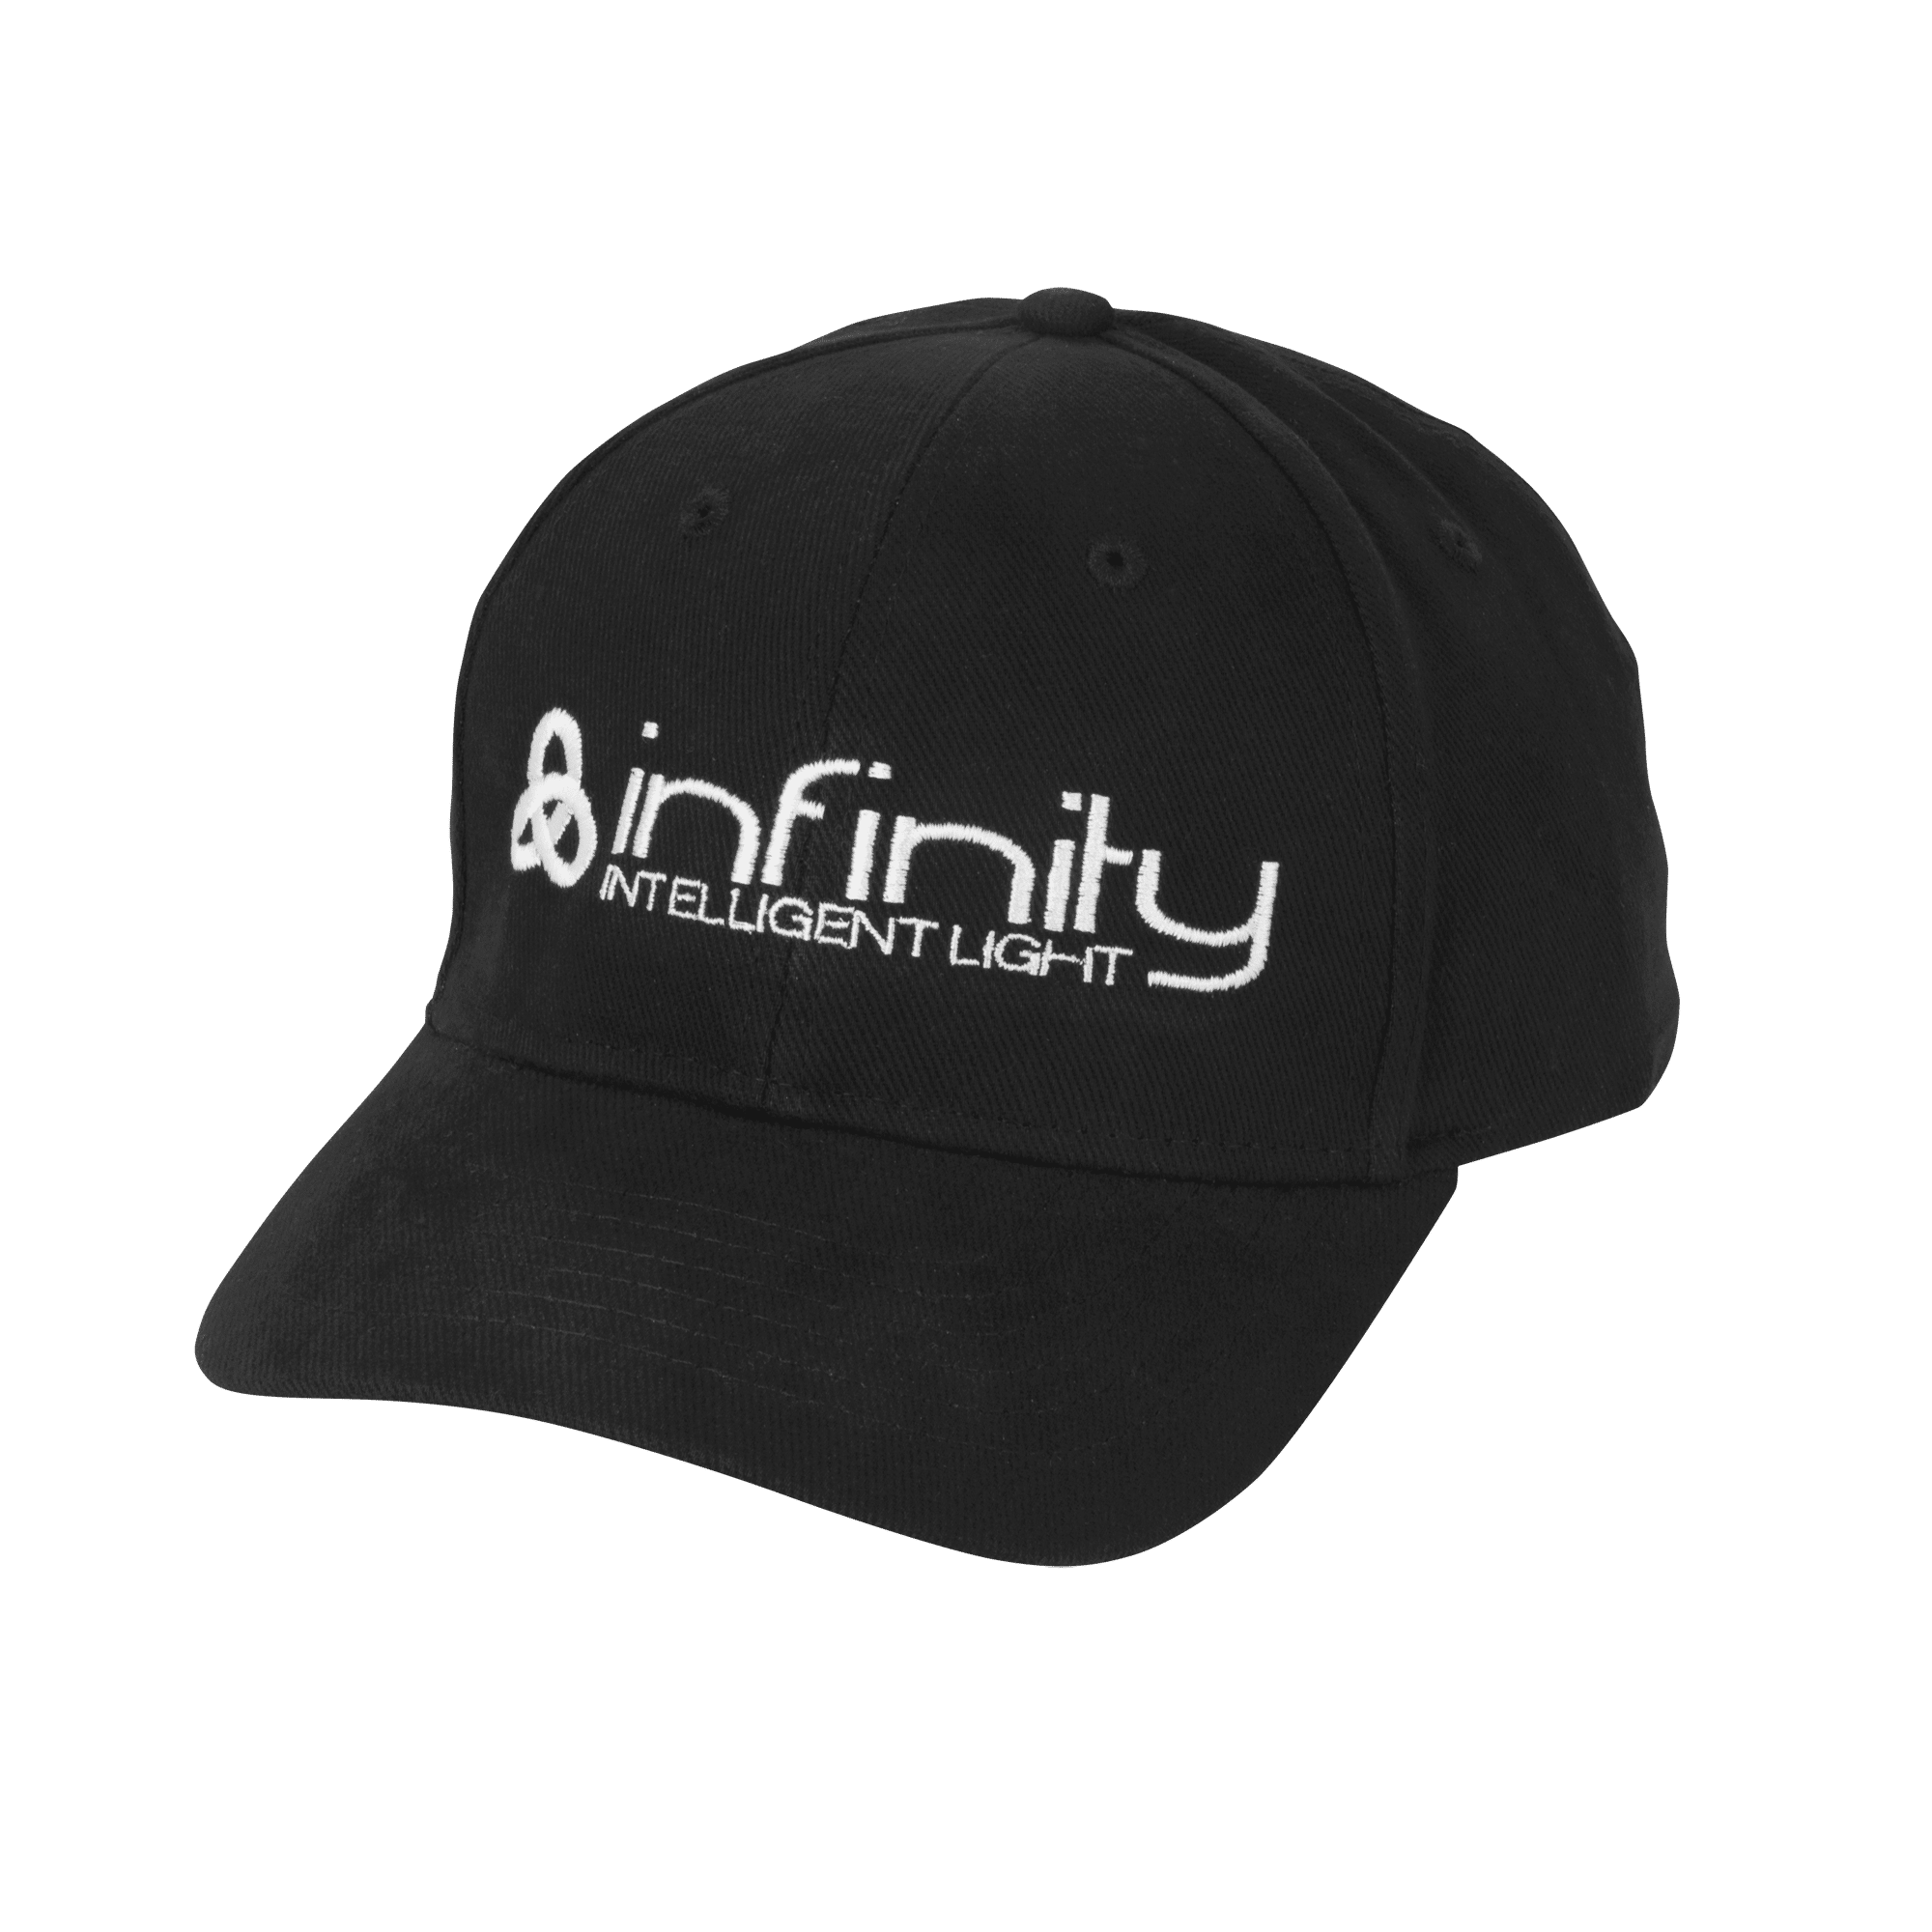 Infinity Cap - Onlinediscowinkel.nl